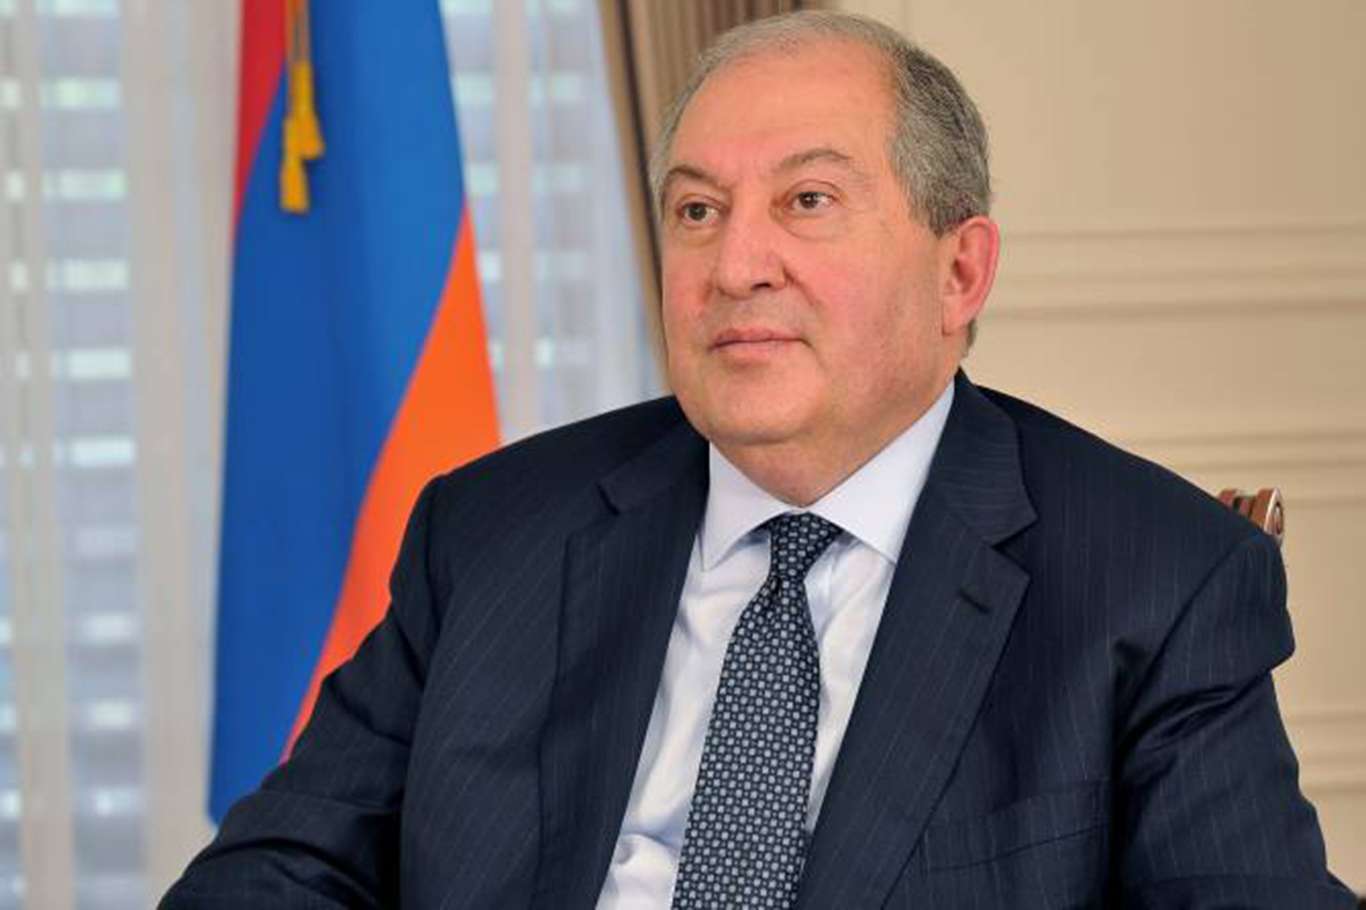 Ermenistan Cumhurbaşkanı Sarkisyan'dan, Başbakan Paşinyan'a erken seçim çağrısı